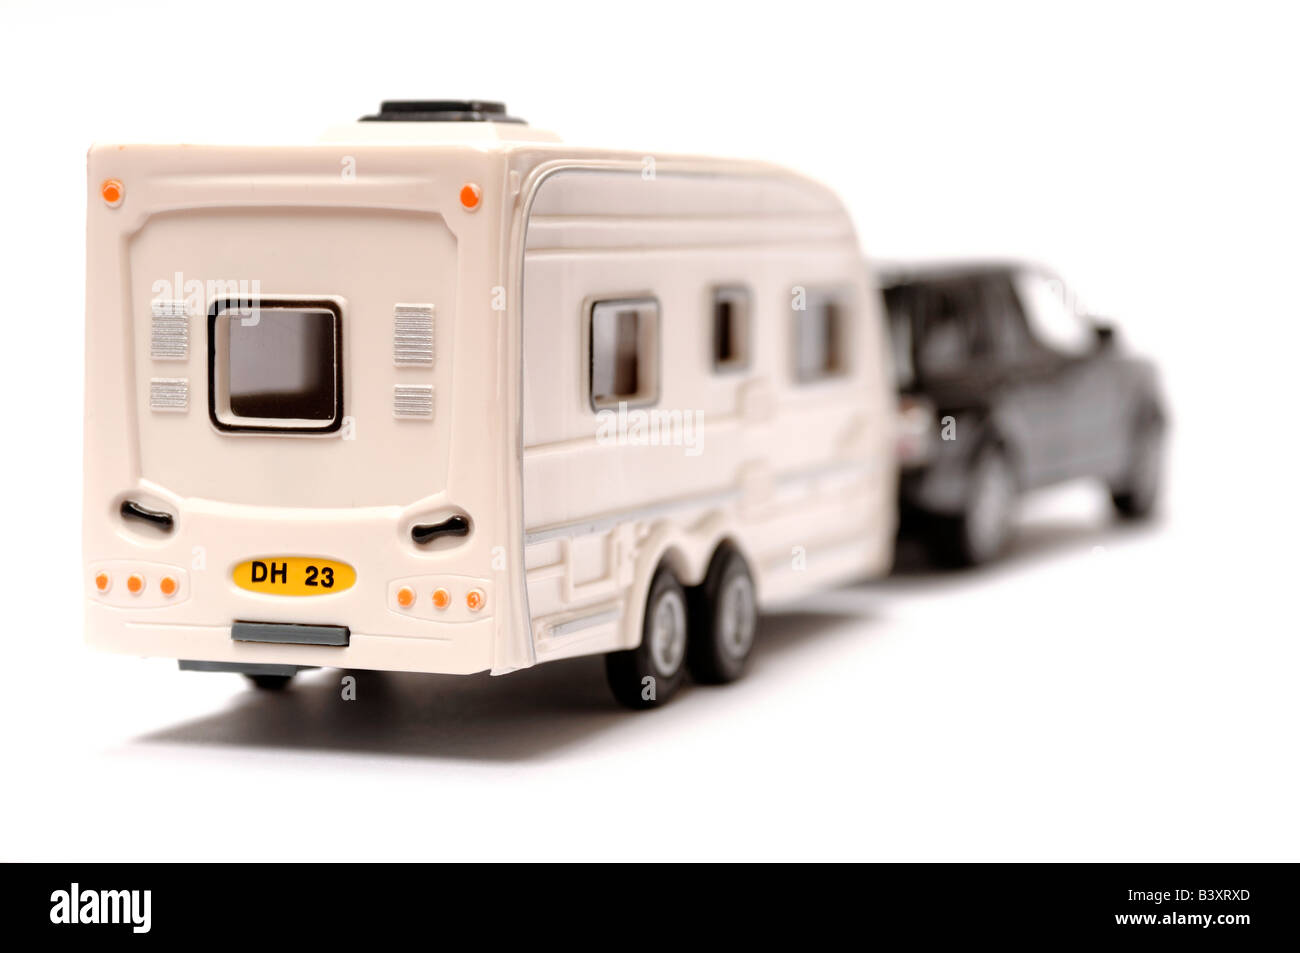 Voiture et caravane jouet en plastique Photo Stock - Alamy